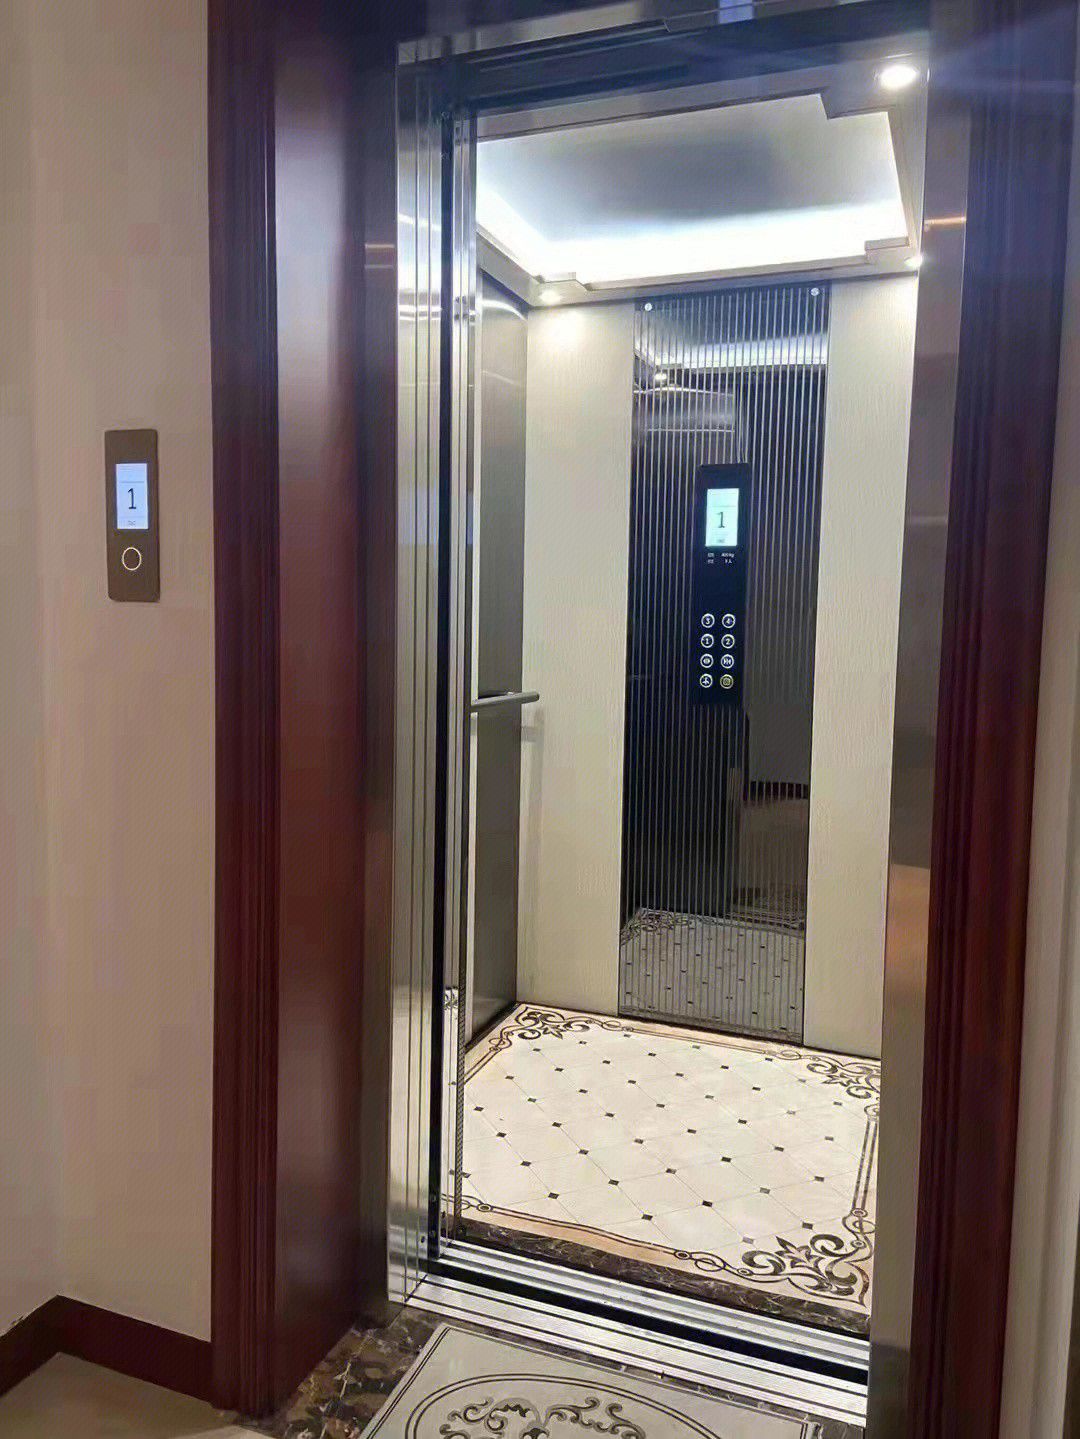 El PalmarAcquistare un piccolo ascensore per uso domesticoCome scegliere quale è meglio